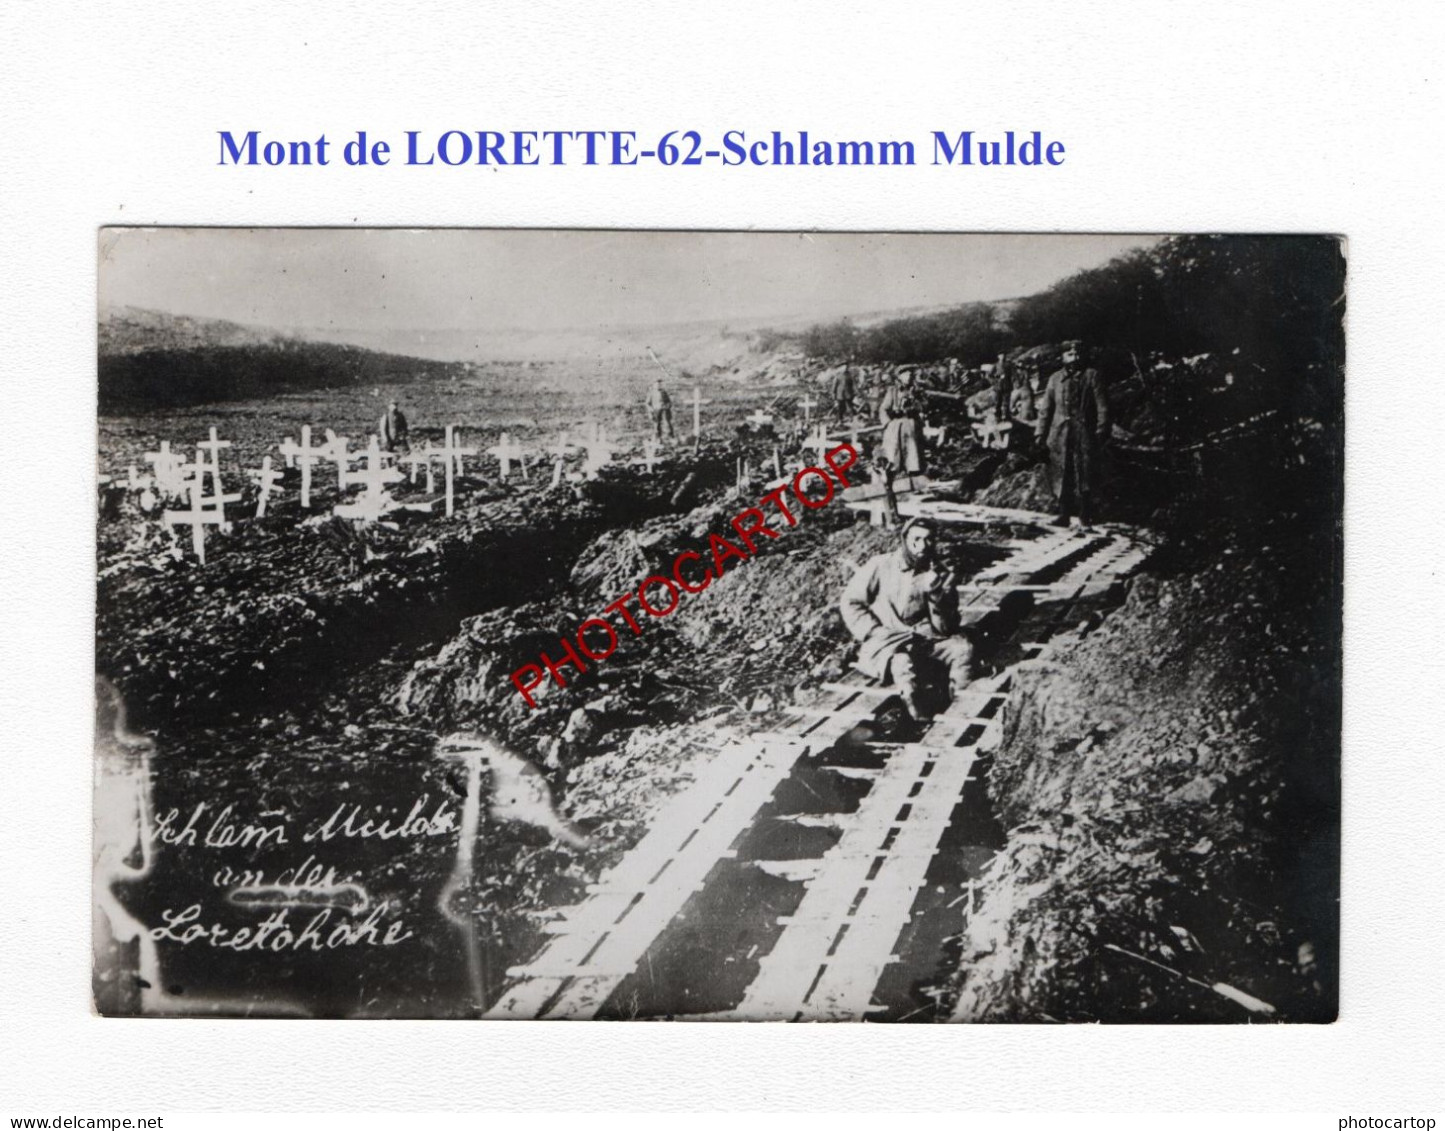 Mont De LORETTE-Loretto-62-Schlamm Mulde-Cimetiere-Tombes-CARTE PHOTO Allemande-GUERRE 14-18-1 WK-MILITARIA- - Cimetières Militaires